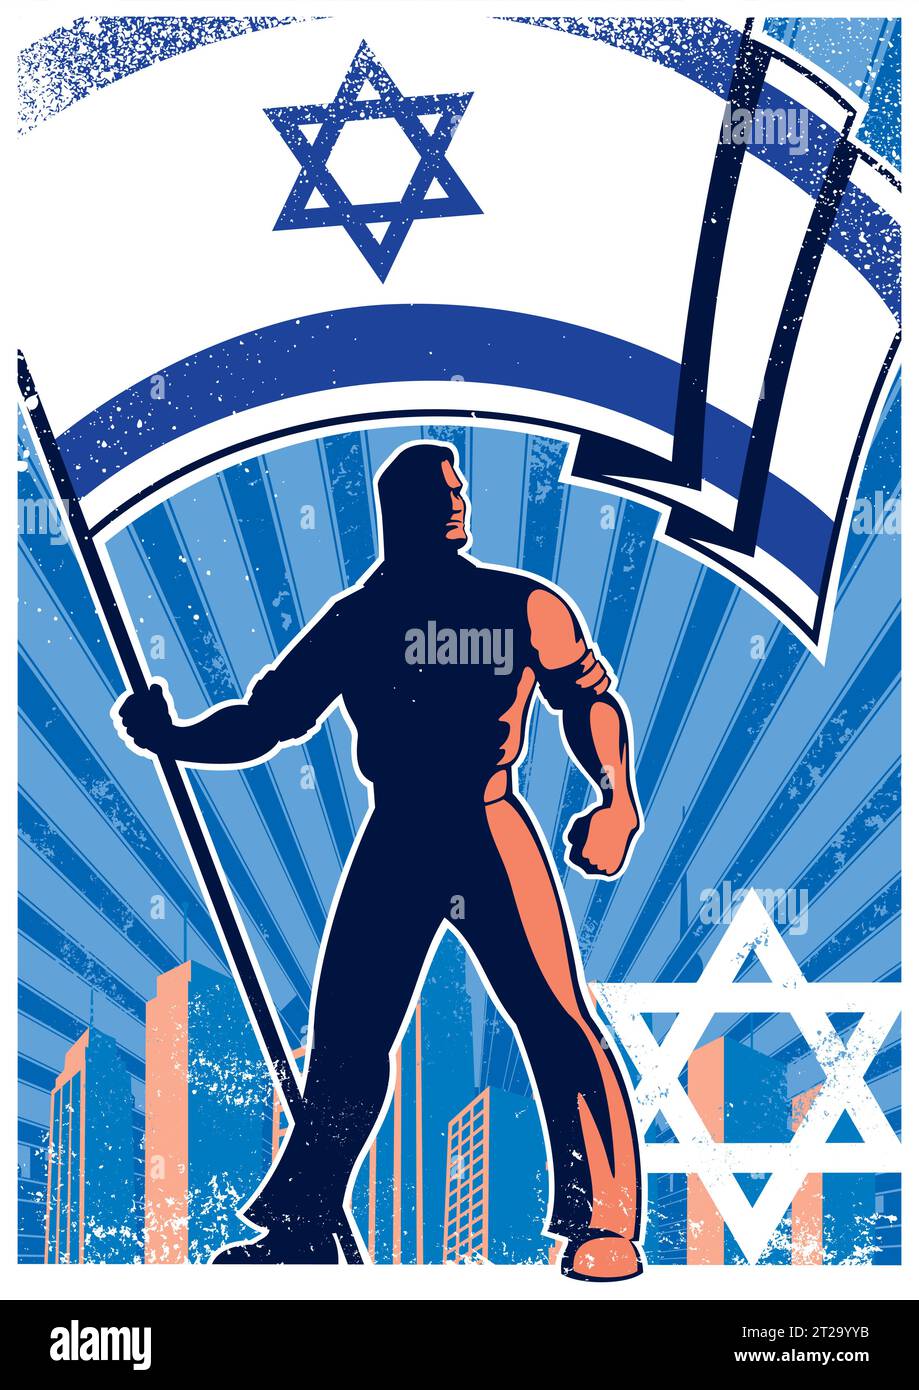 Vintage-Poster eines starken Mannes, der die israelische Flagge hält, vor dem Hintergrund der Stadt mit leuchtenden Blautönen und Texturen. Stock Vektor